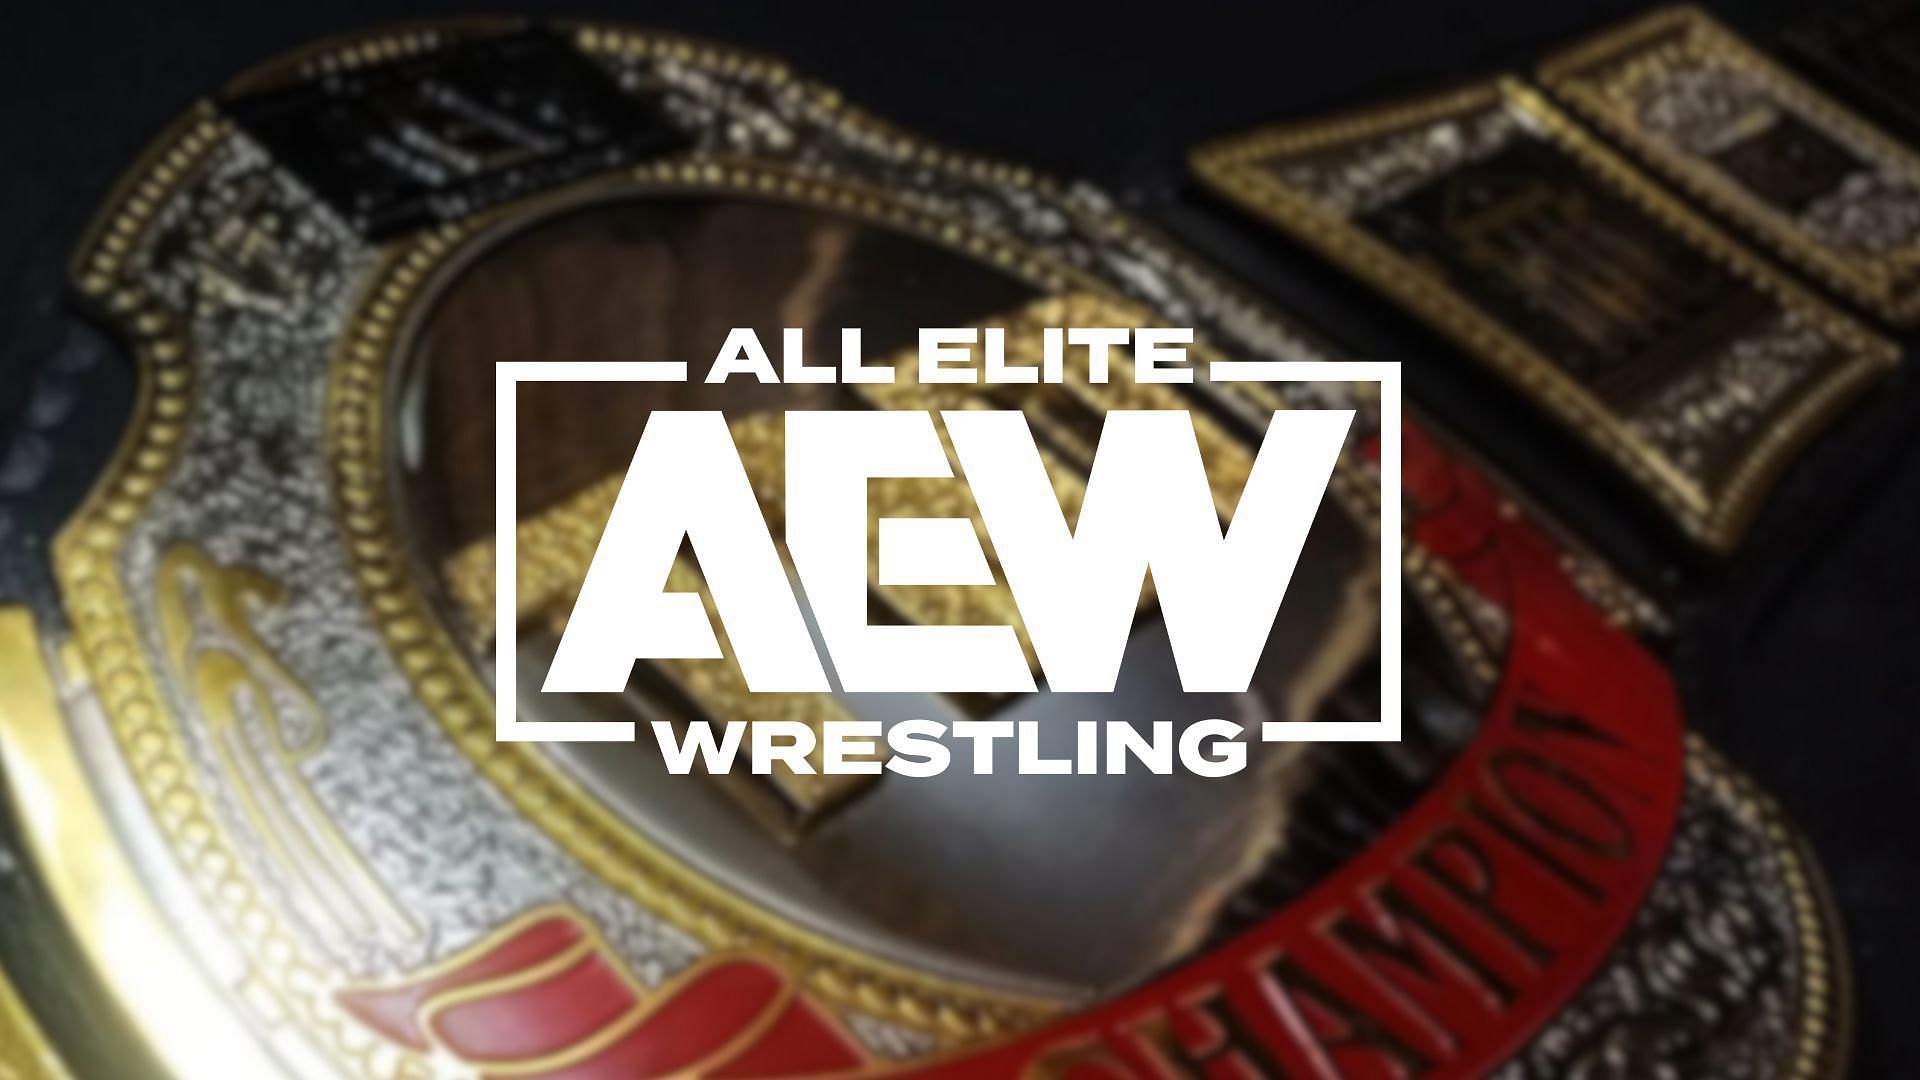 All Elite Wrestling was established in 2019